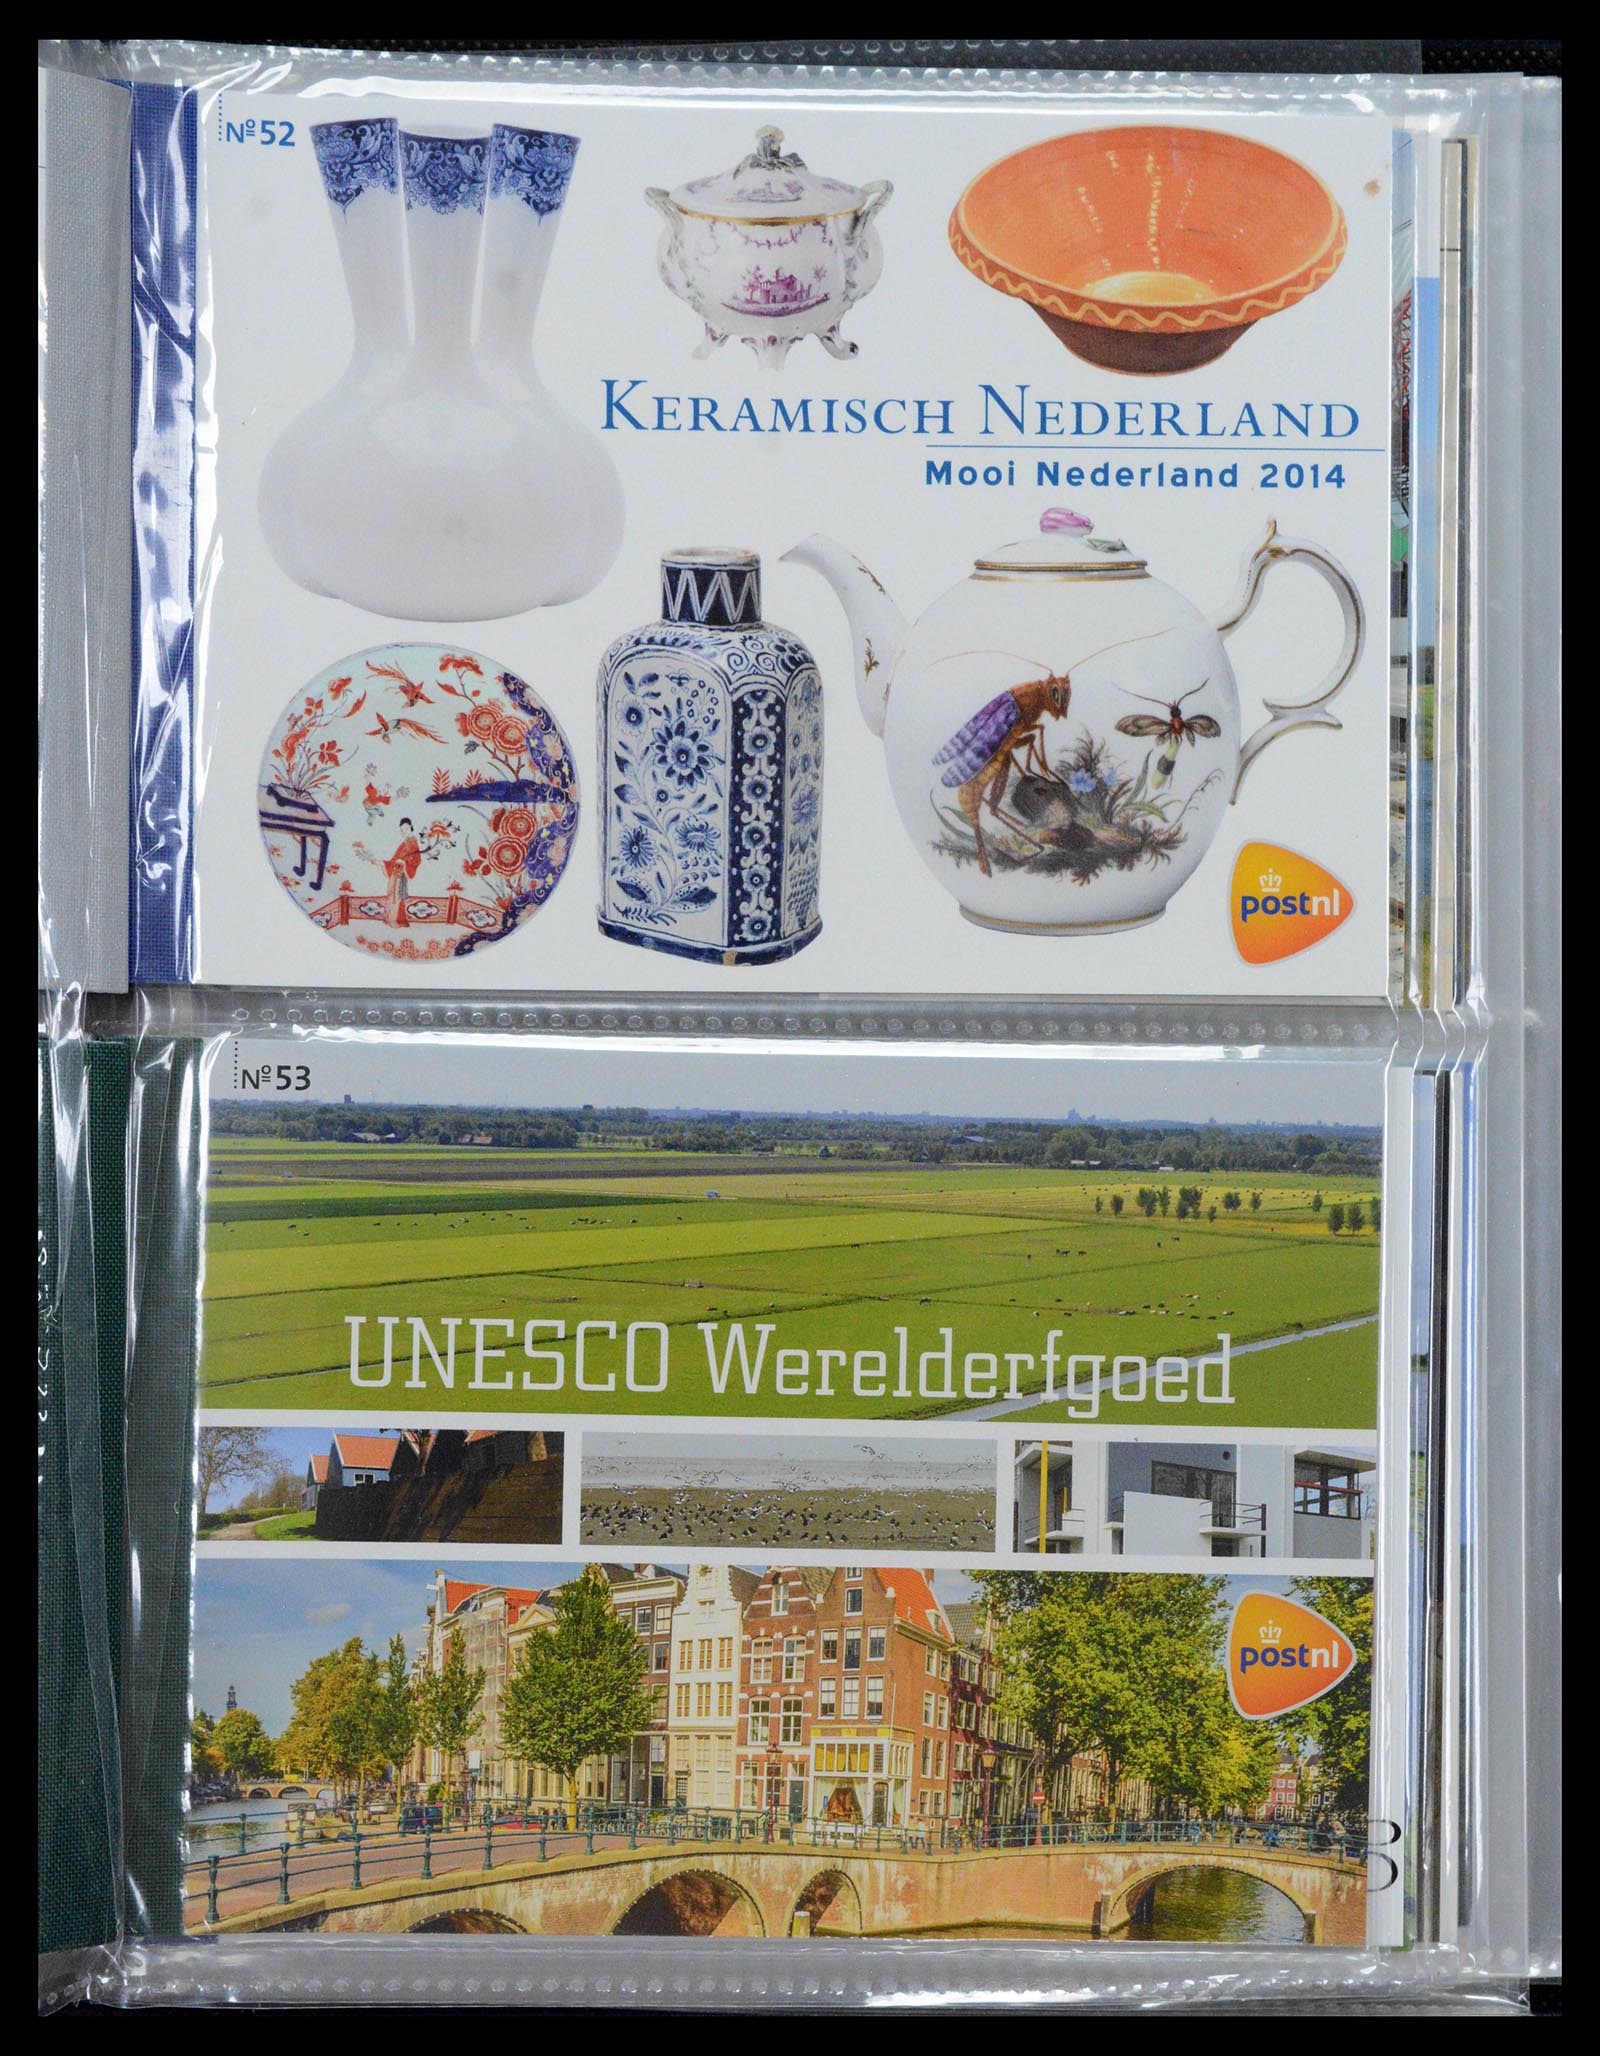 39018 0027 - Stamp collection 39018 Netherlands prestige booklets 2003-2016.